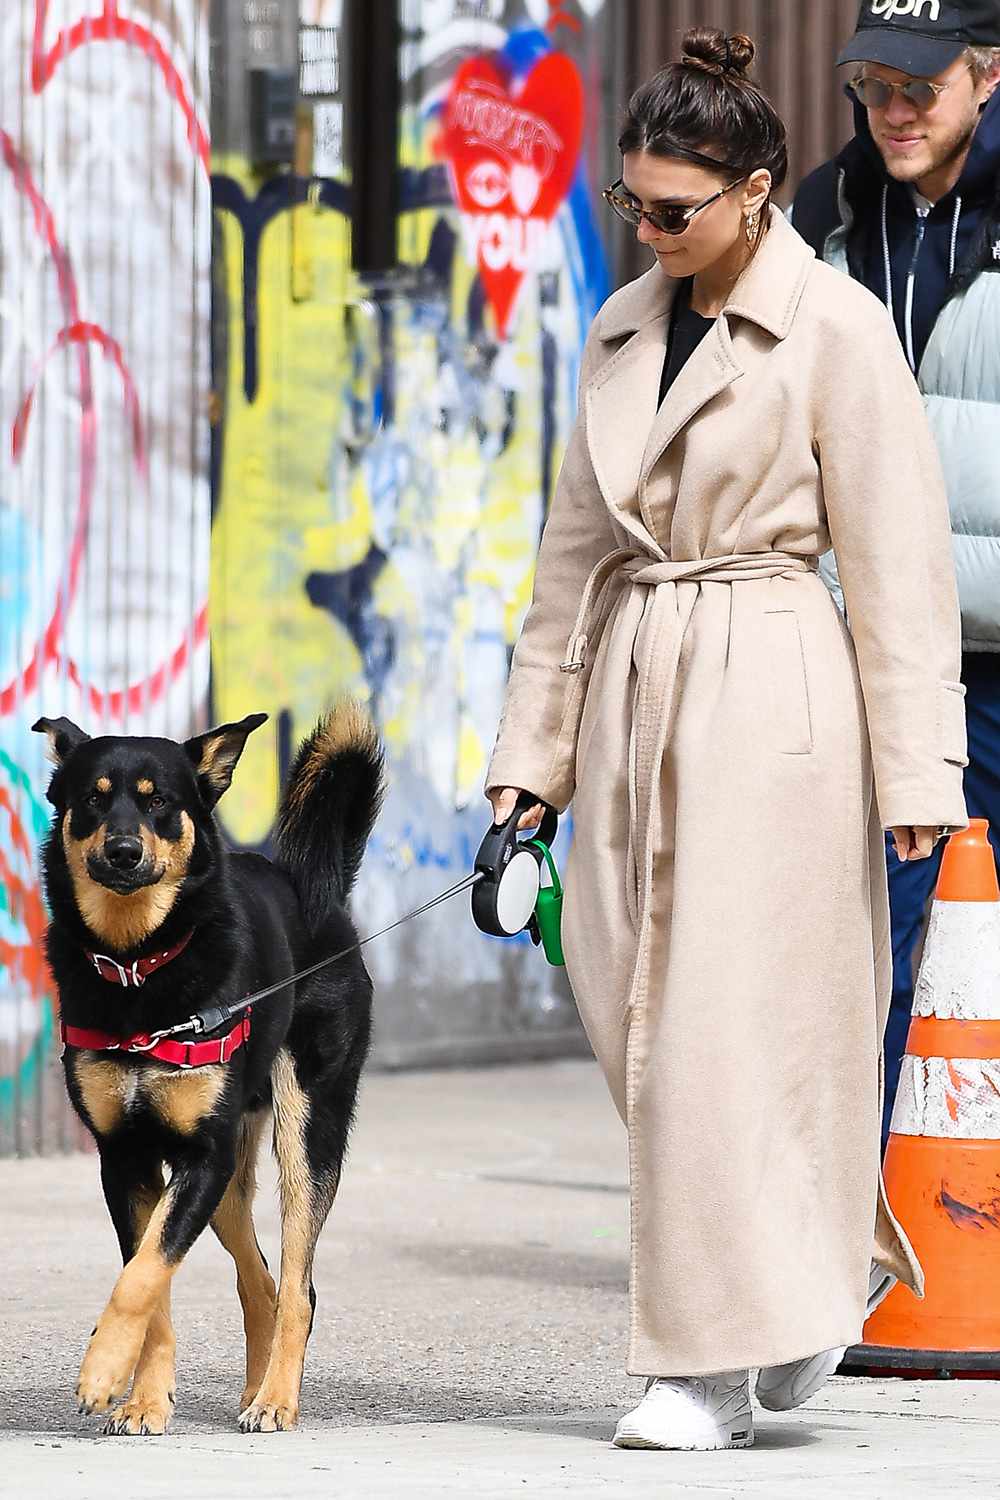 Emily Ratajkowski and husband Sebastian Bear-McClard walk their dog Colombo in New York City